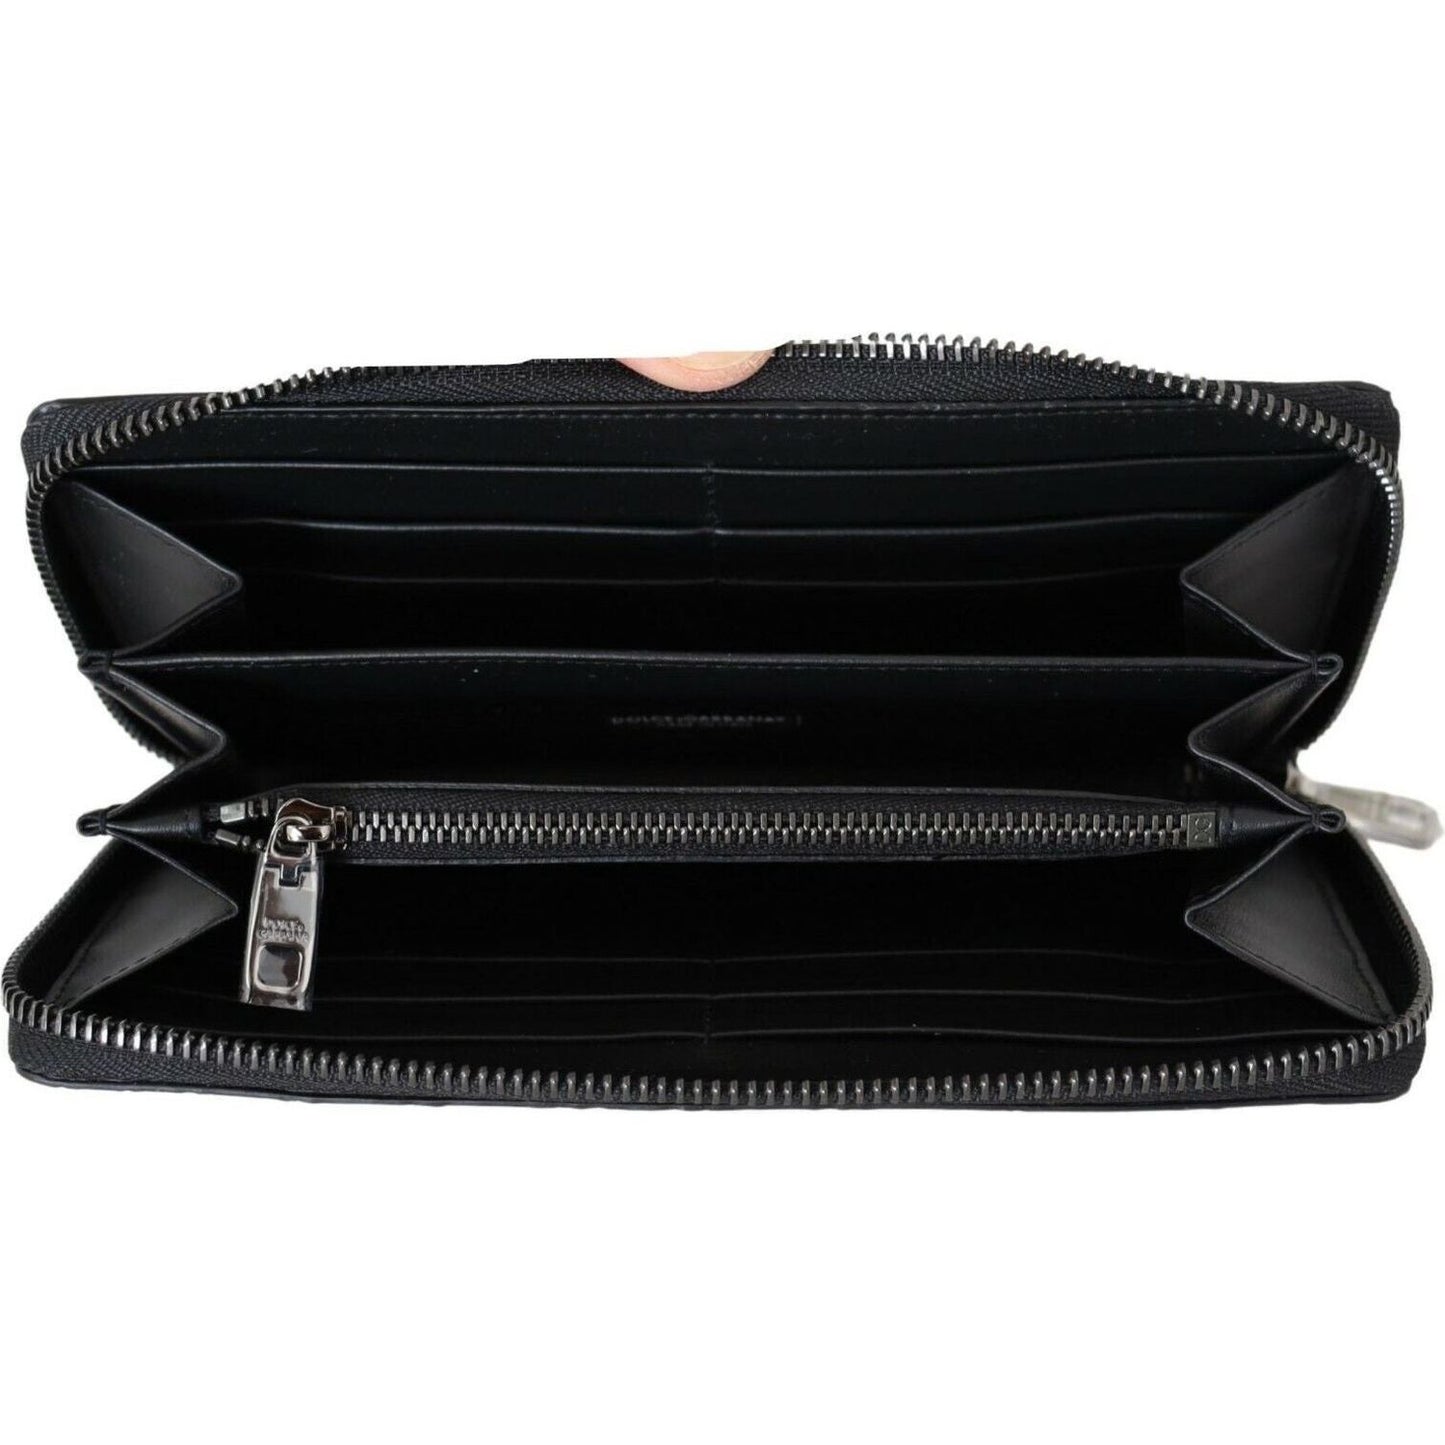 Dolce & GabbanaElegant Textured Leather Continental WalletMcRichard Designer Brands£629.00